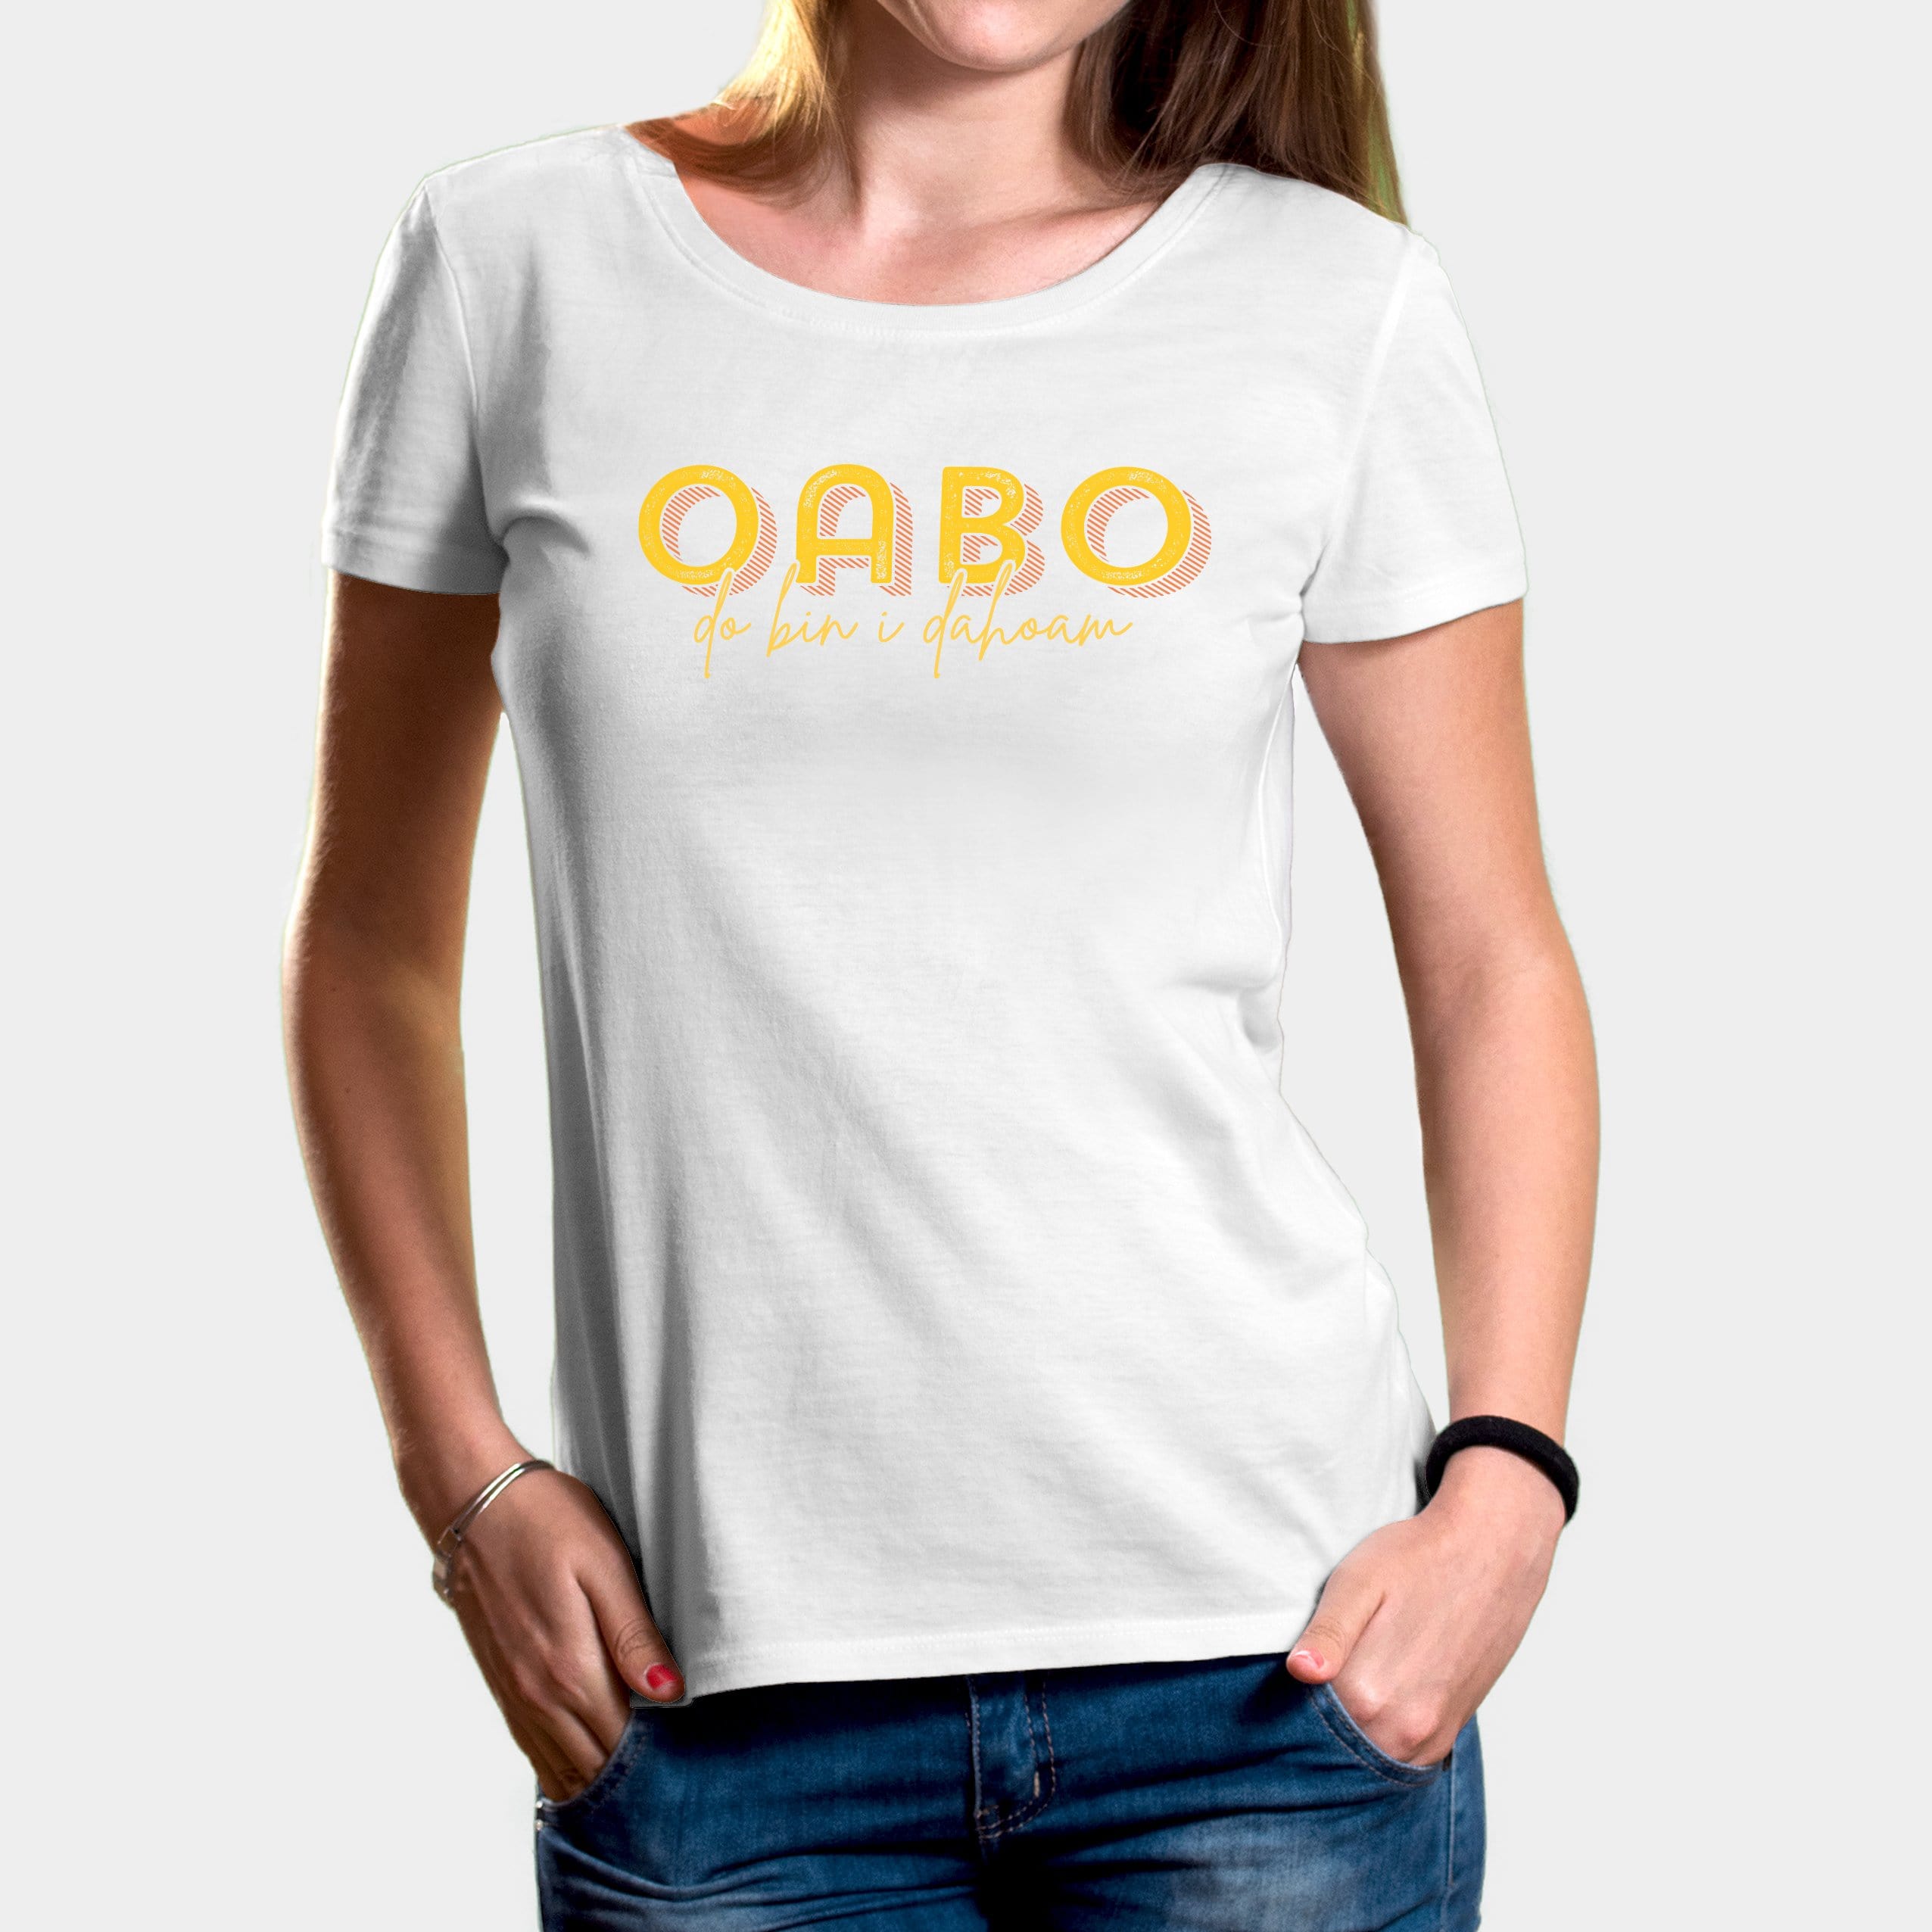 Projekt Damen-T-Shirt "Oabo" XS / weiß - aus nachhaltiger und fairer Produktion